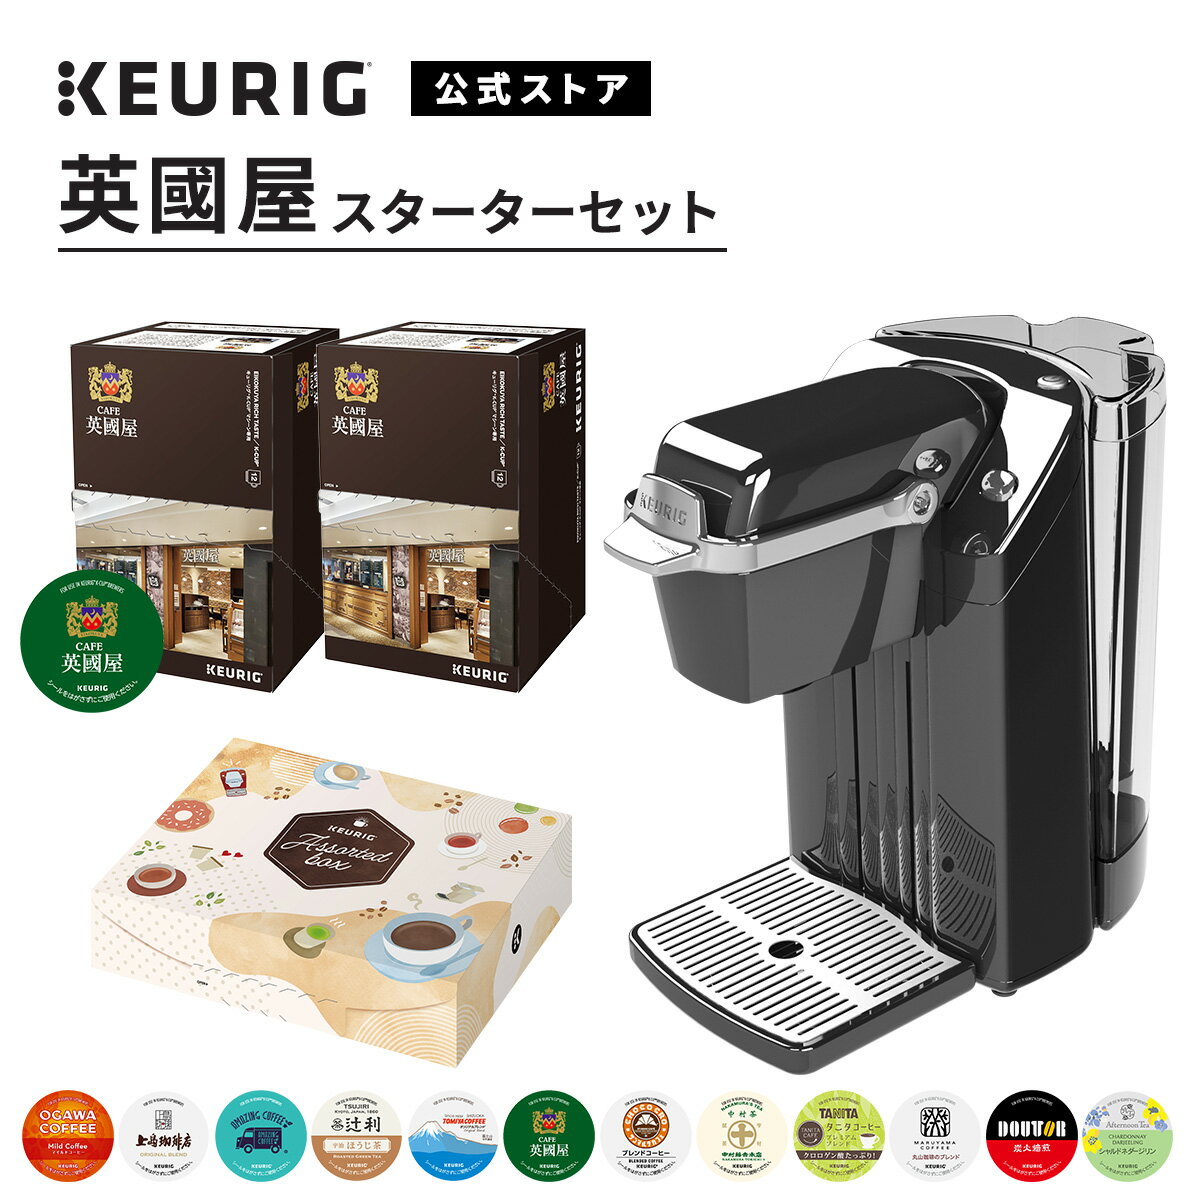 【公式】 KEURIG キューリグ カプセル式コーヒーメーカー 英國屋スターターセット ［BS240 1台 + 英國屋リッチテイス…